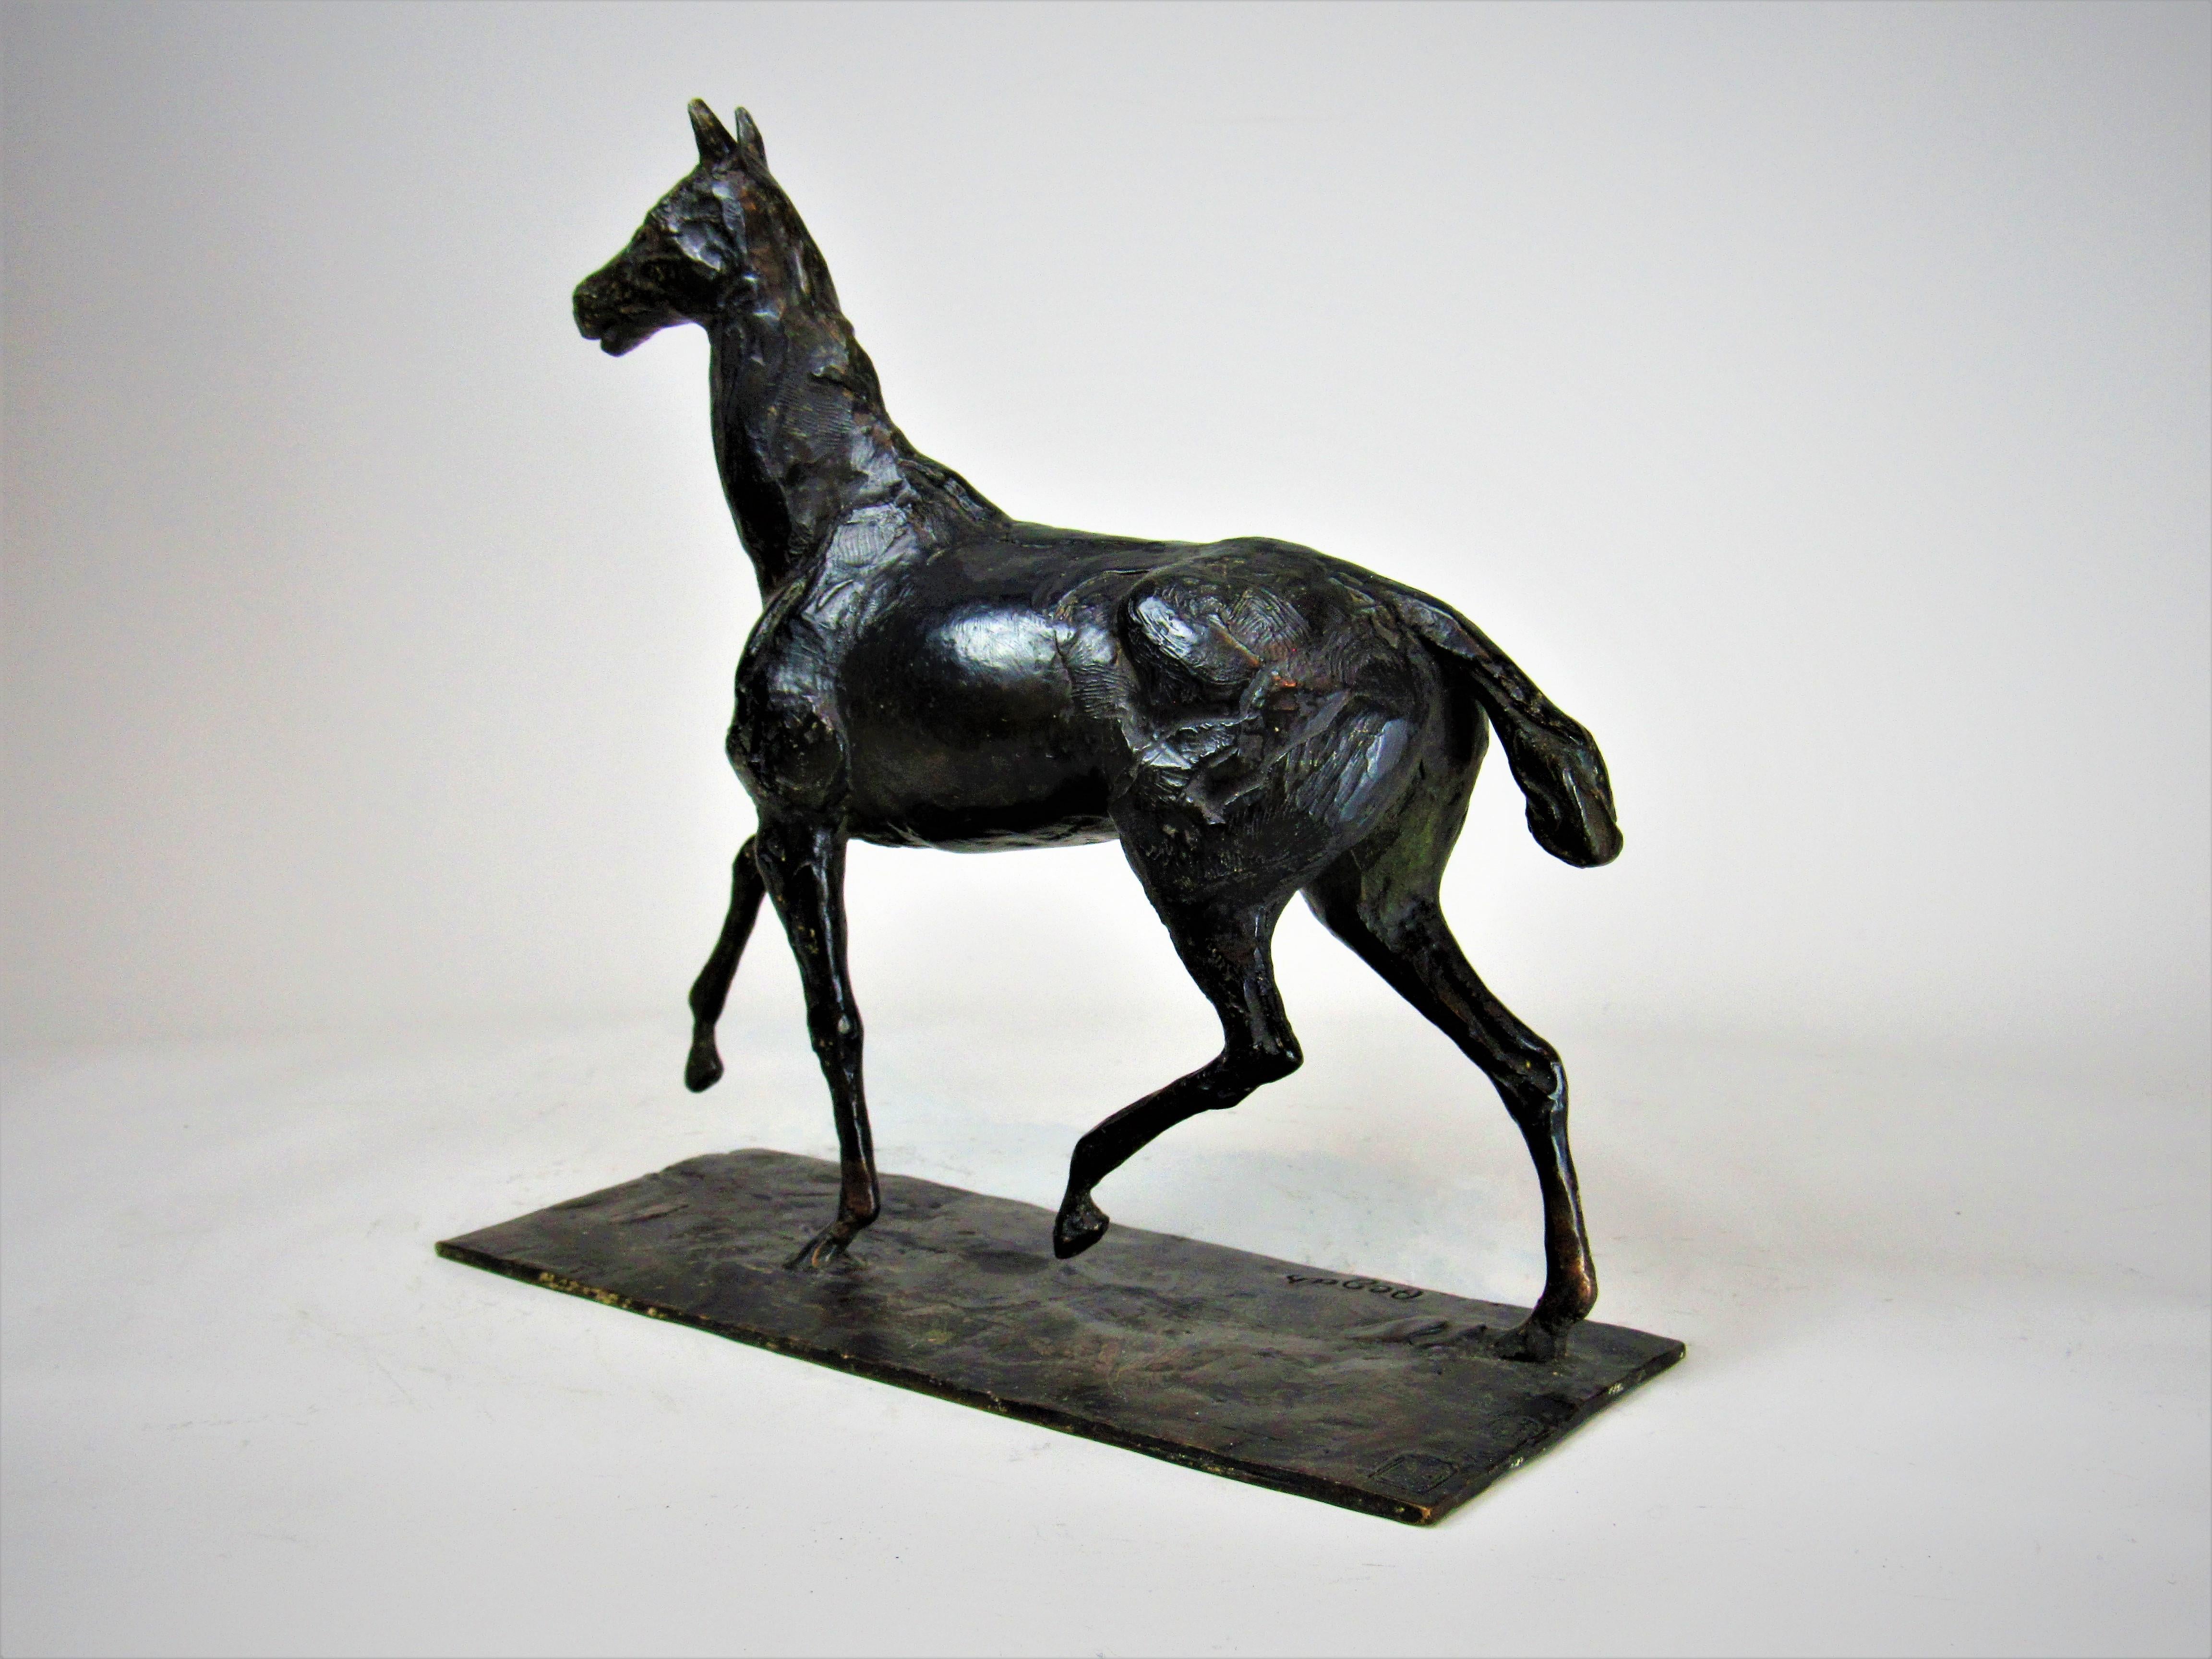 Cheval marchant au pas relevé ist eines der elegantesten und anspruchsvollsten Pferdemodelle des Künstlers. Es unterstreicht Degas' tiefes Verständnis für die Anatomie des Pferdes und seine Fähigkeit, es mit Leichtigkeit und Charme darzustellen.